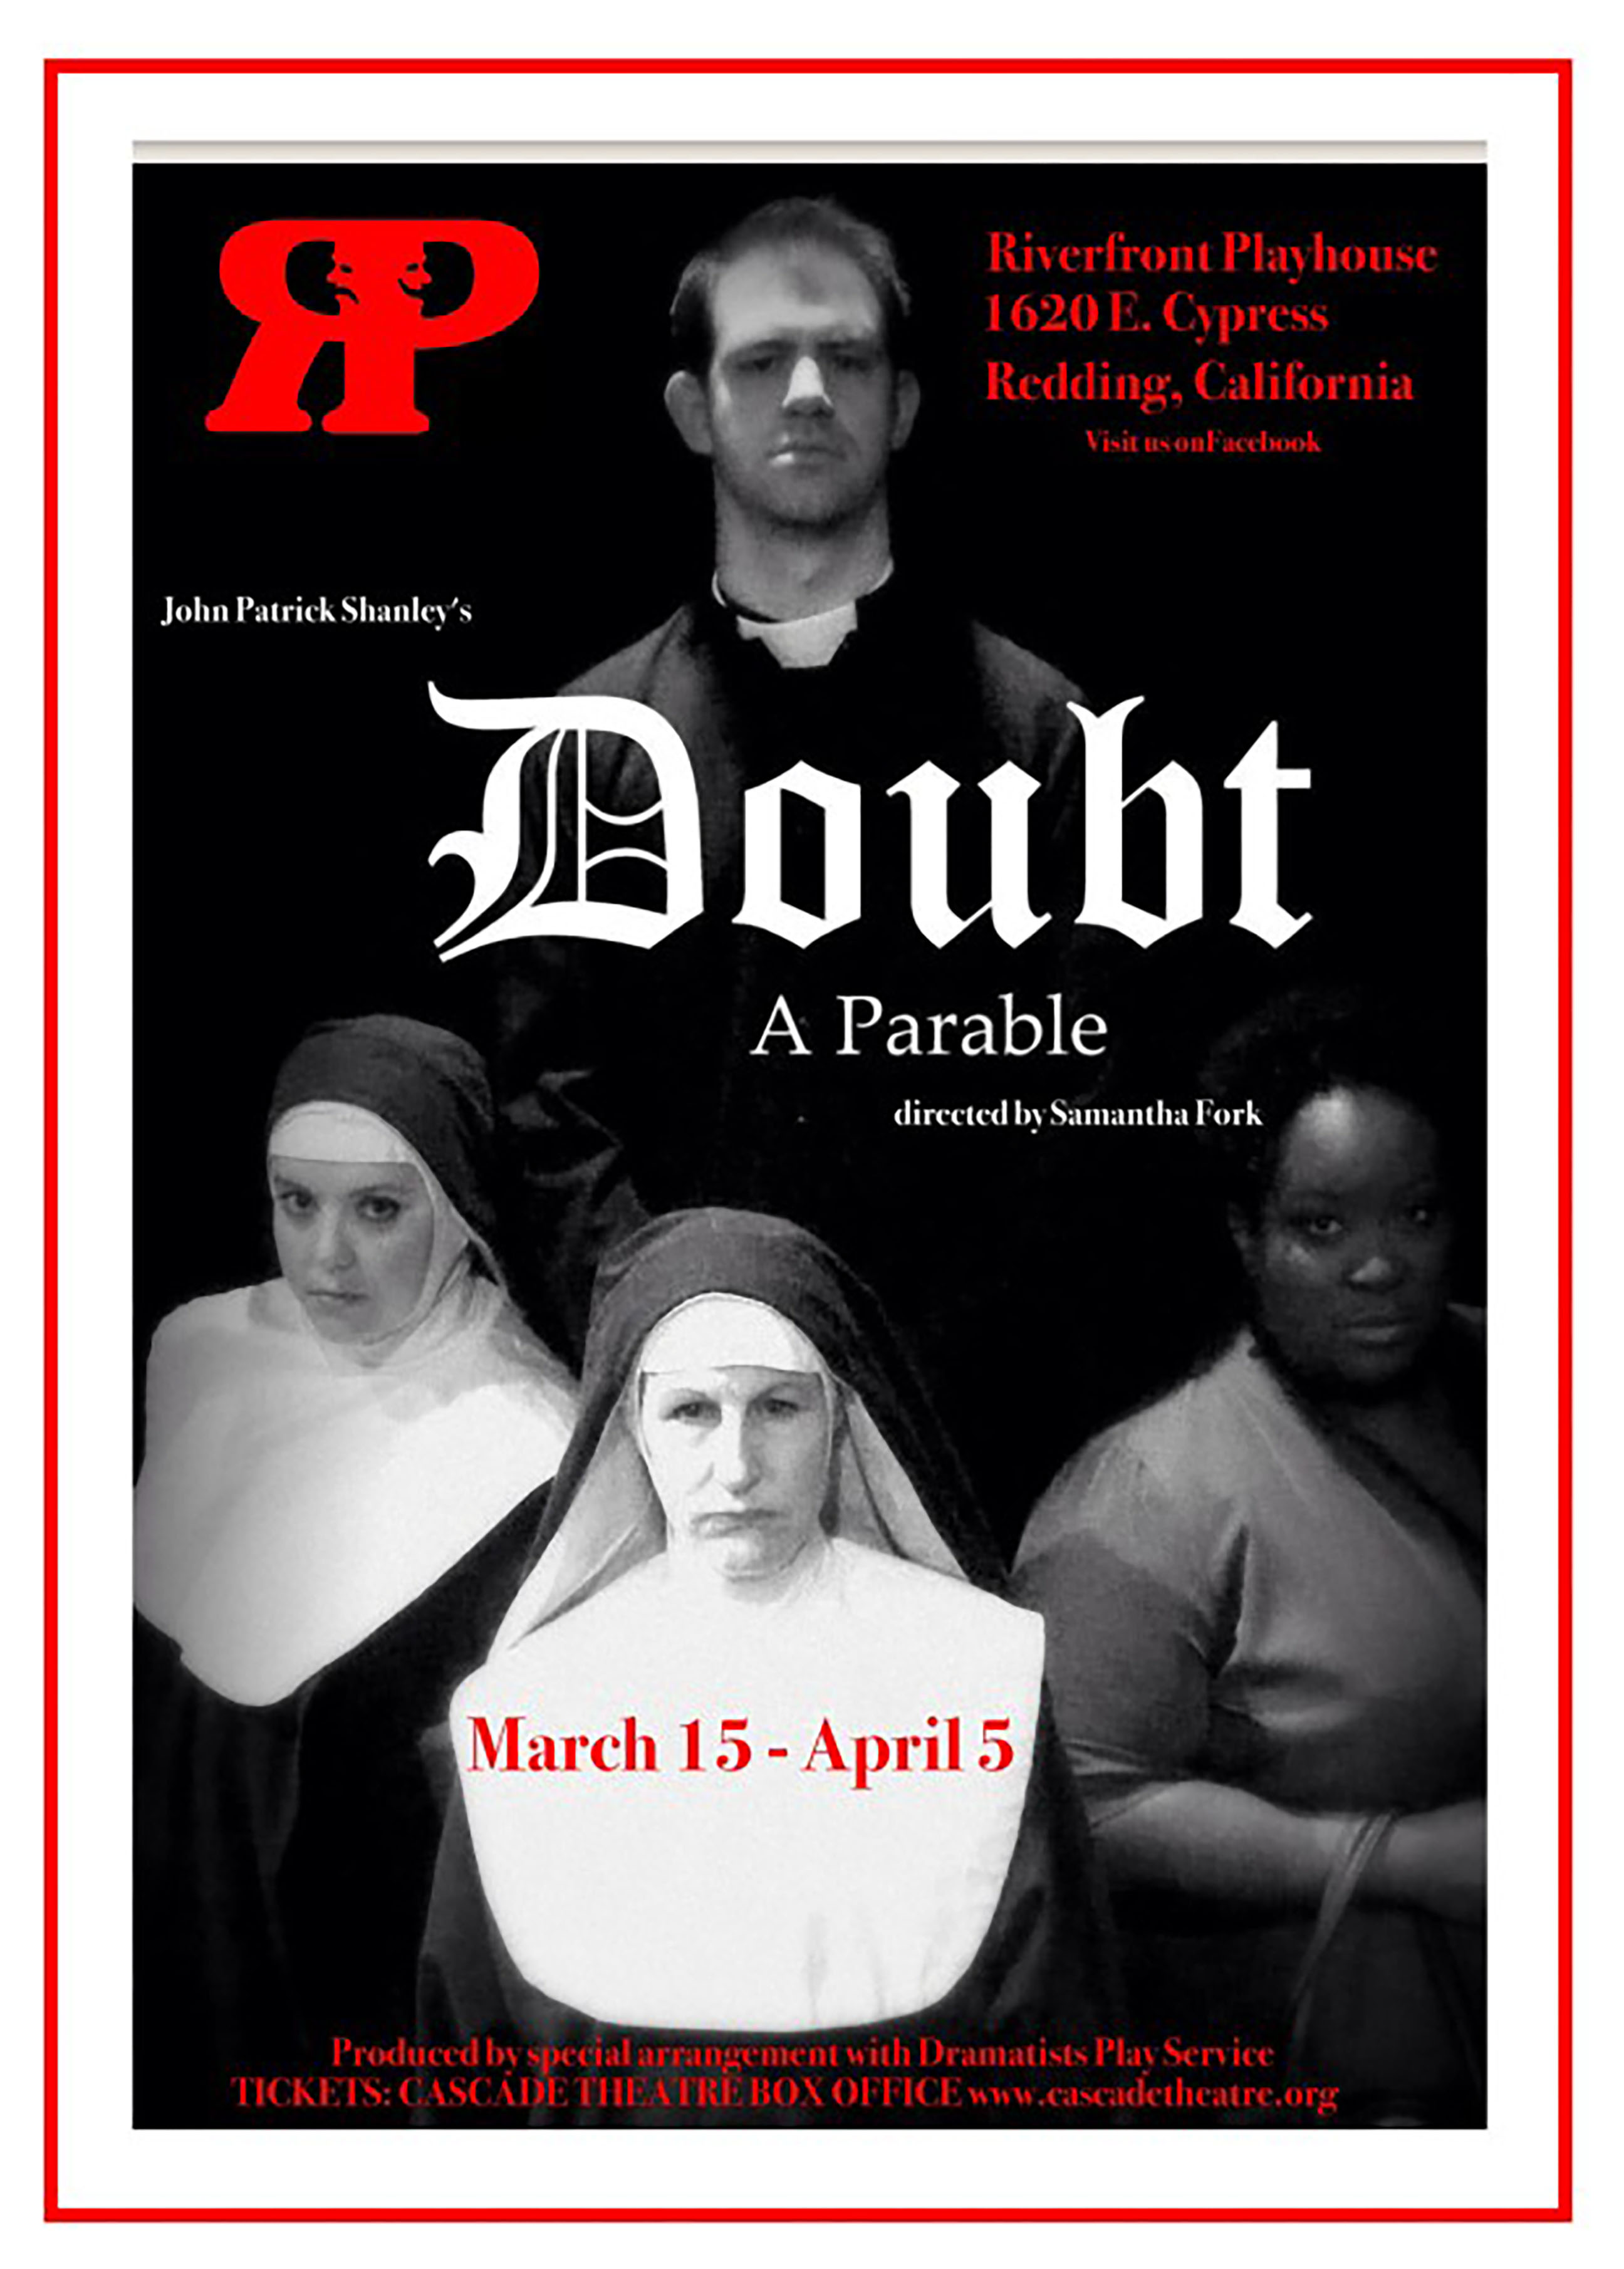 Doubt, A Parable